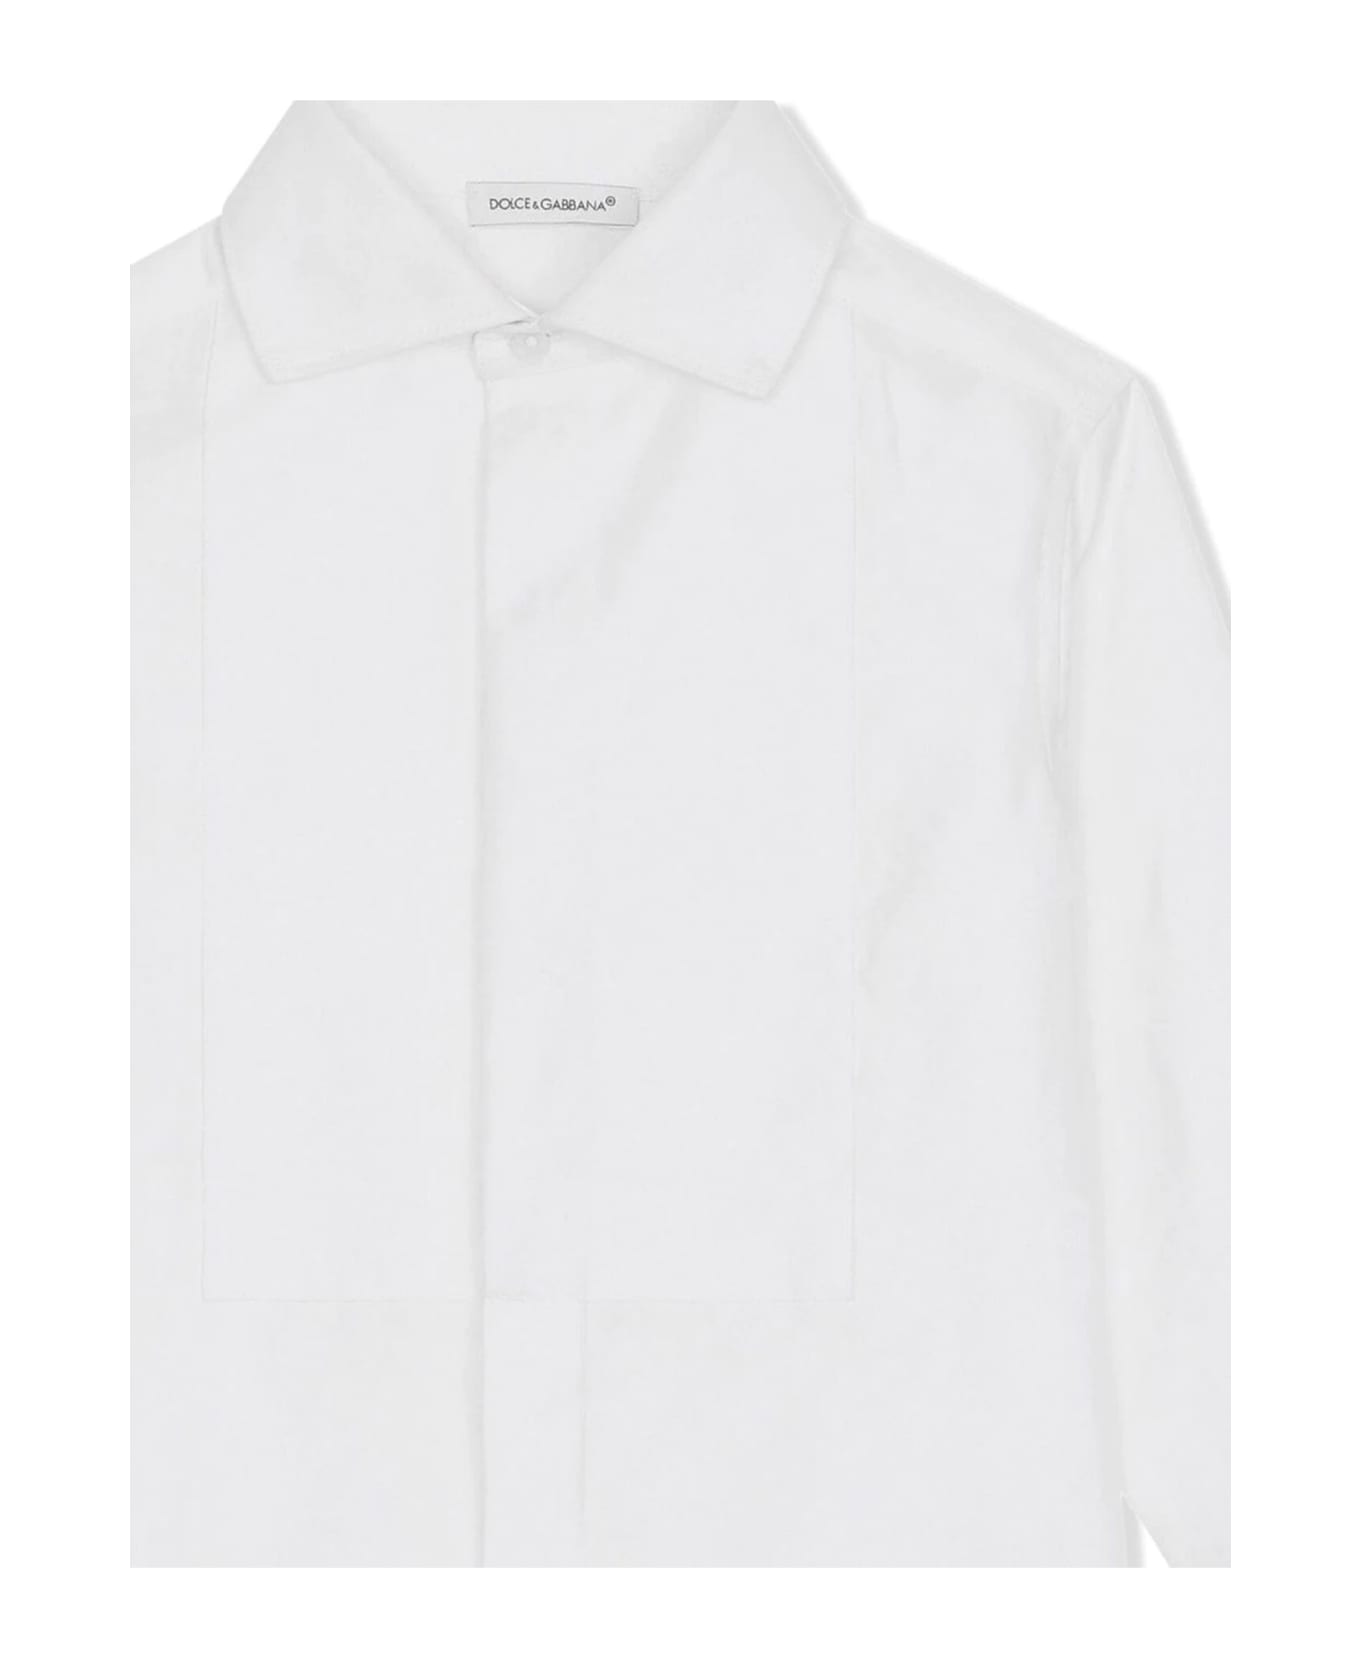 Dolce & Gabbana White Cotton Shirt - Bianco